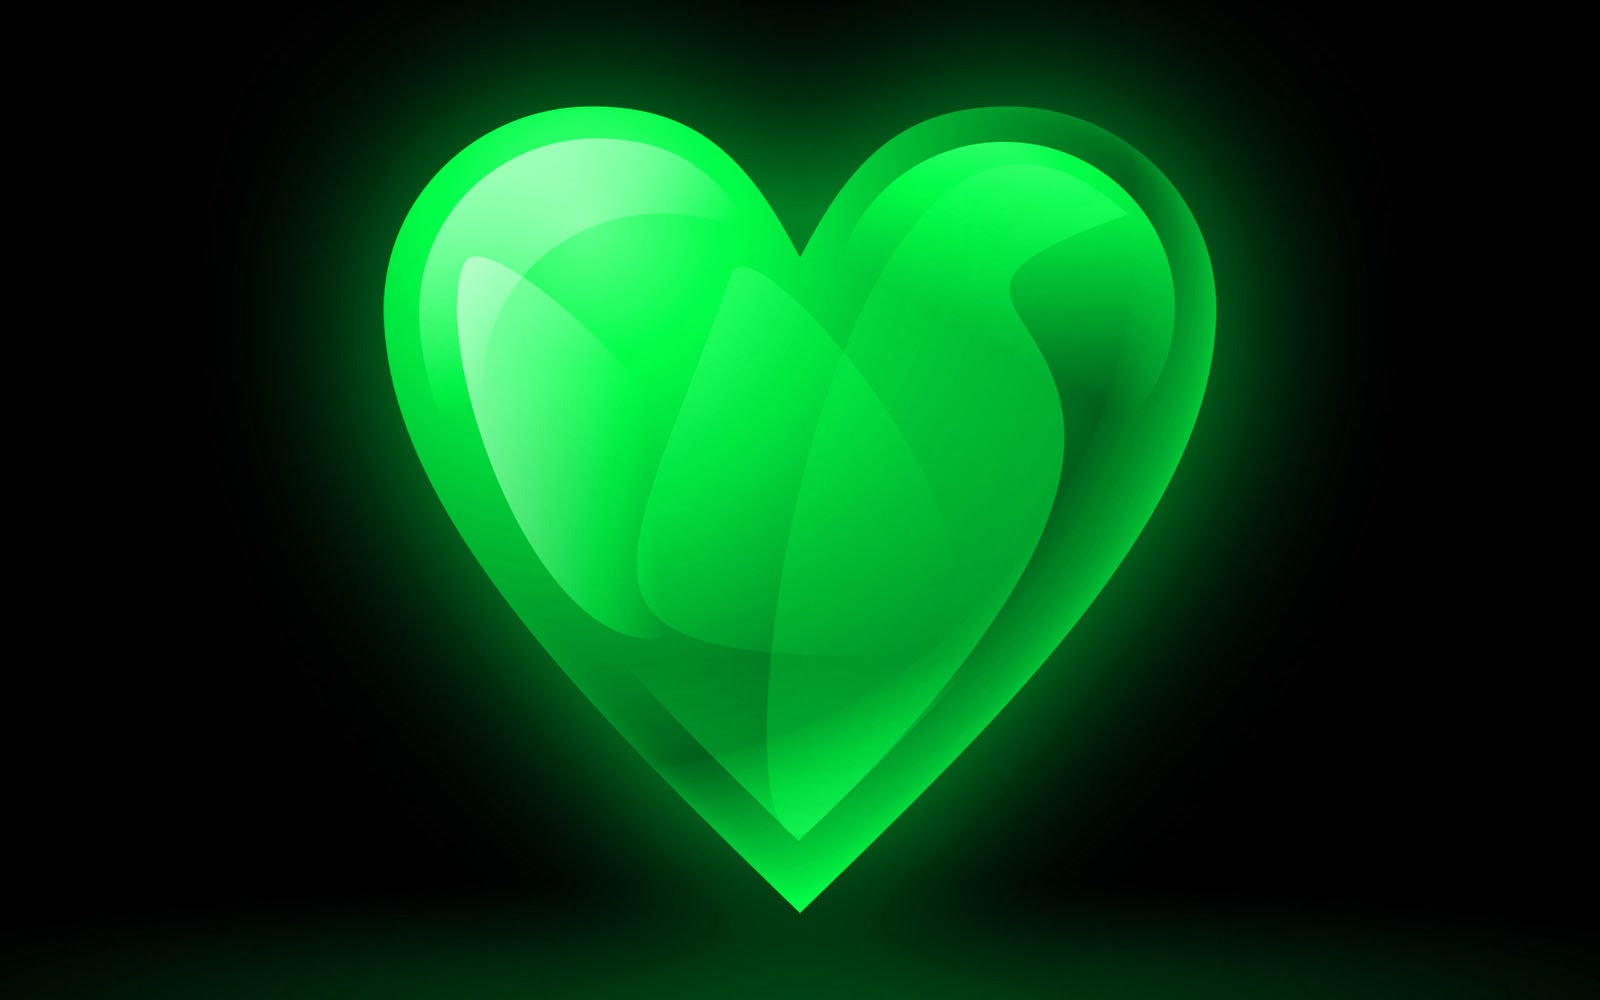  Green Heart Wallpapers Green Heart Desktop Wallpapers Green Heart